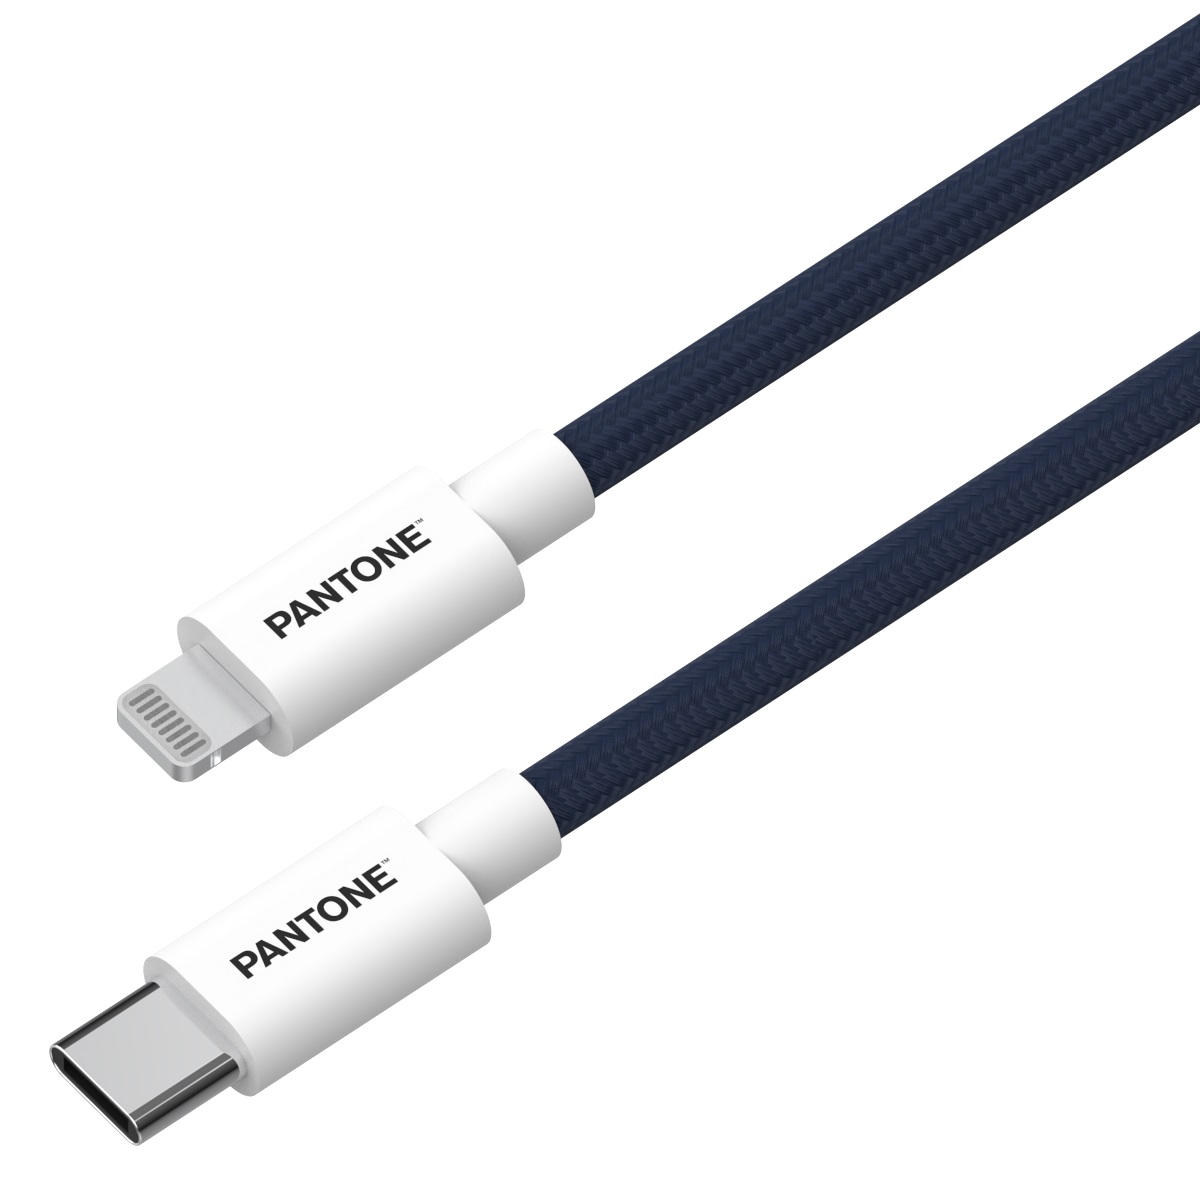 PANTONE MFi kabel Lightning - USB-C 1,5m PT-CTL002-5 Navy 2380C / 2